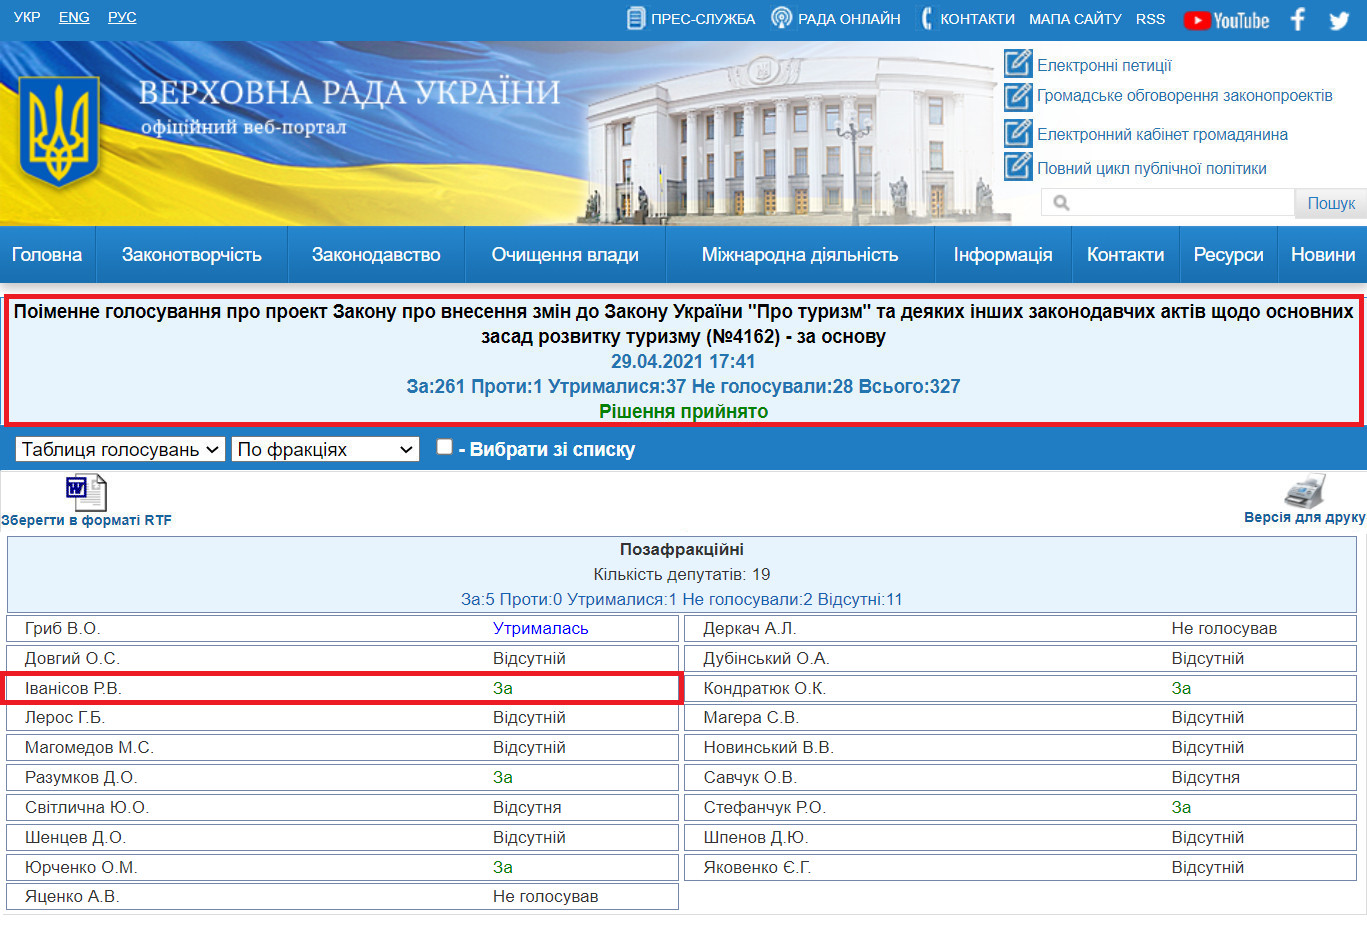 http://w1.c1.rada.gov.ua/pls/radan_gs09/ns_golos?g_id=12433